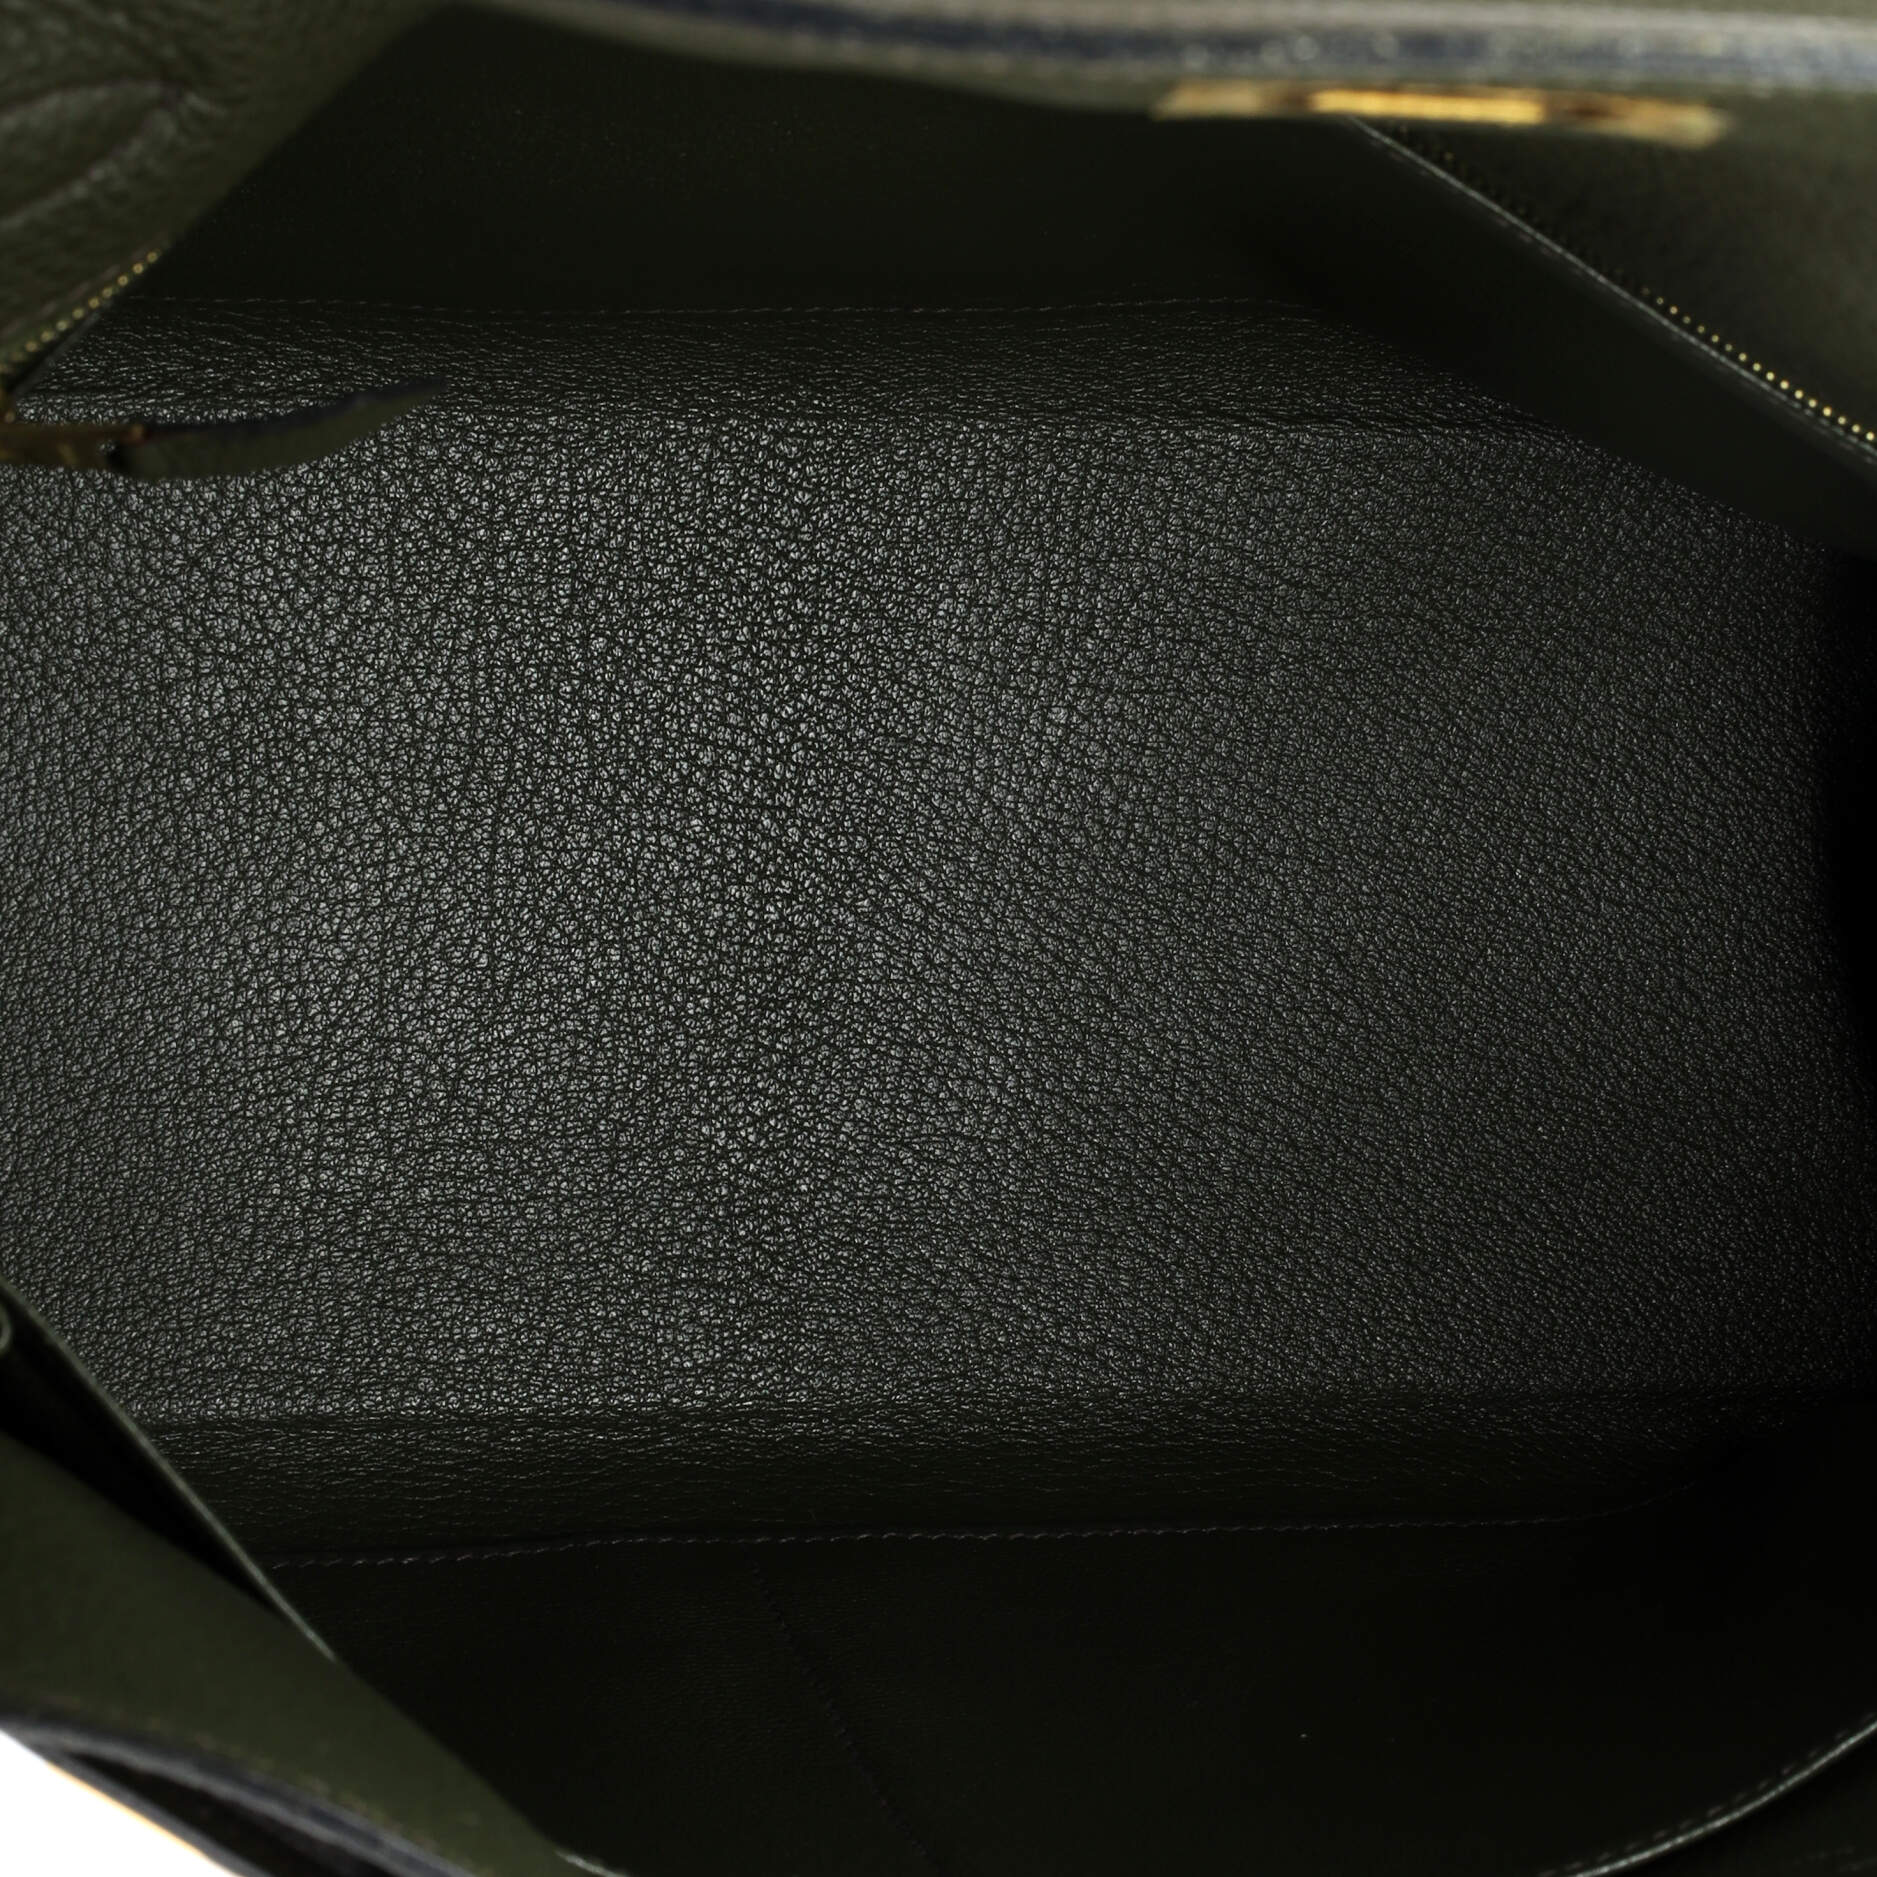 Hermes Kelly Handbag Vert Olive Togo with Gold Hardware 32